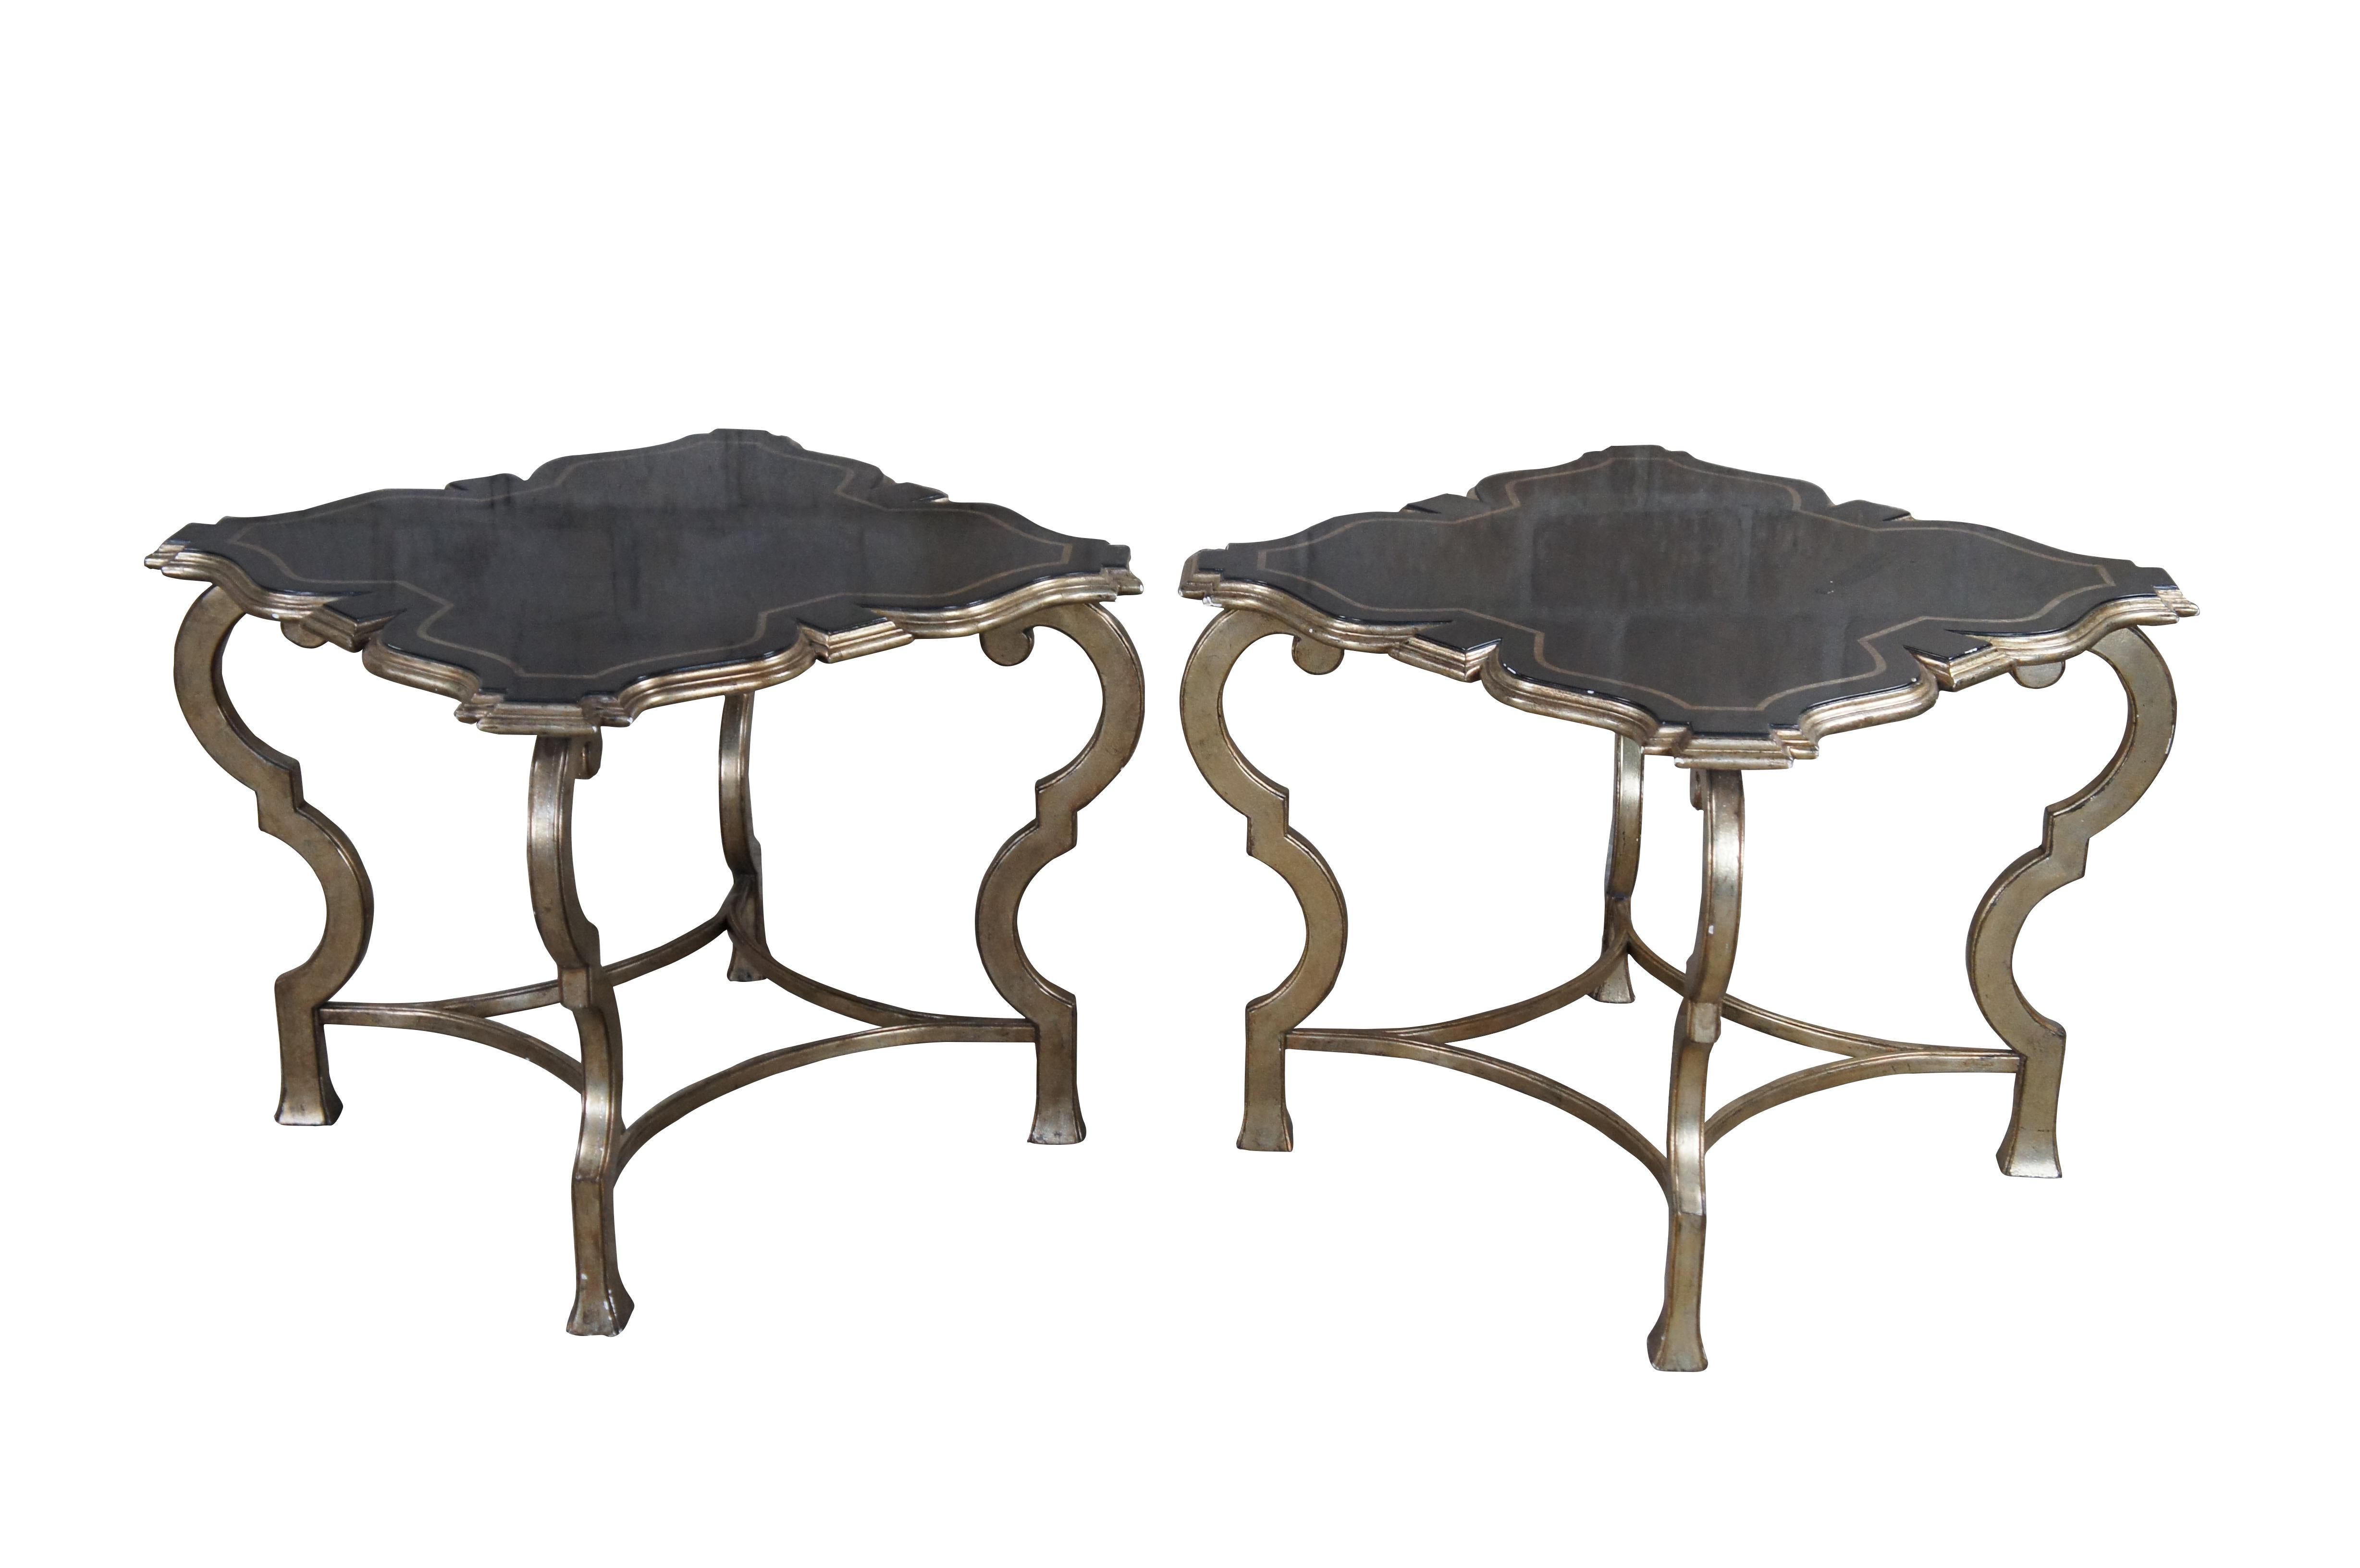 Ein Paar zeitgenössische Tische. Die asymmetrische, quadratische Form A mit schwarzem Craquelé-Finish wird von einem verschnörkelten, champagnerfarbenen Sockel gekrönt.

Abmessungen:
24